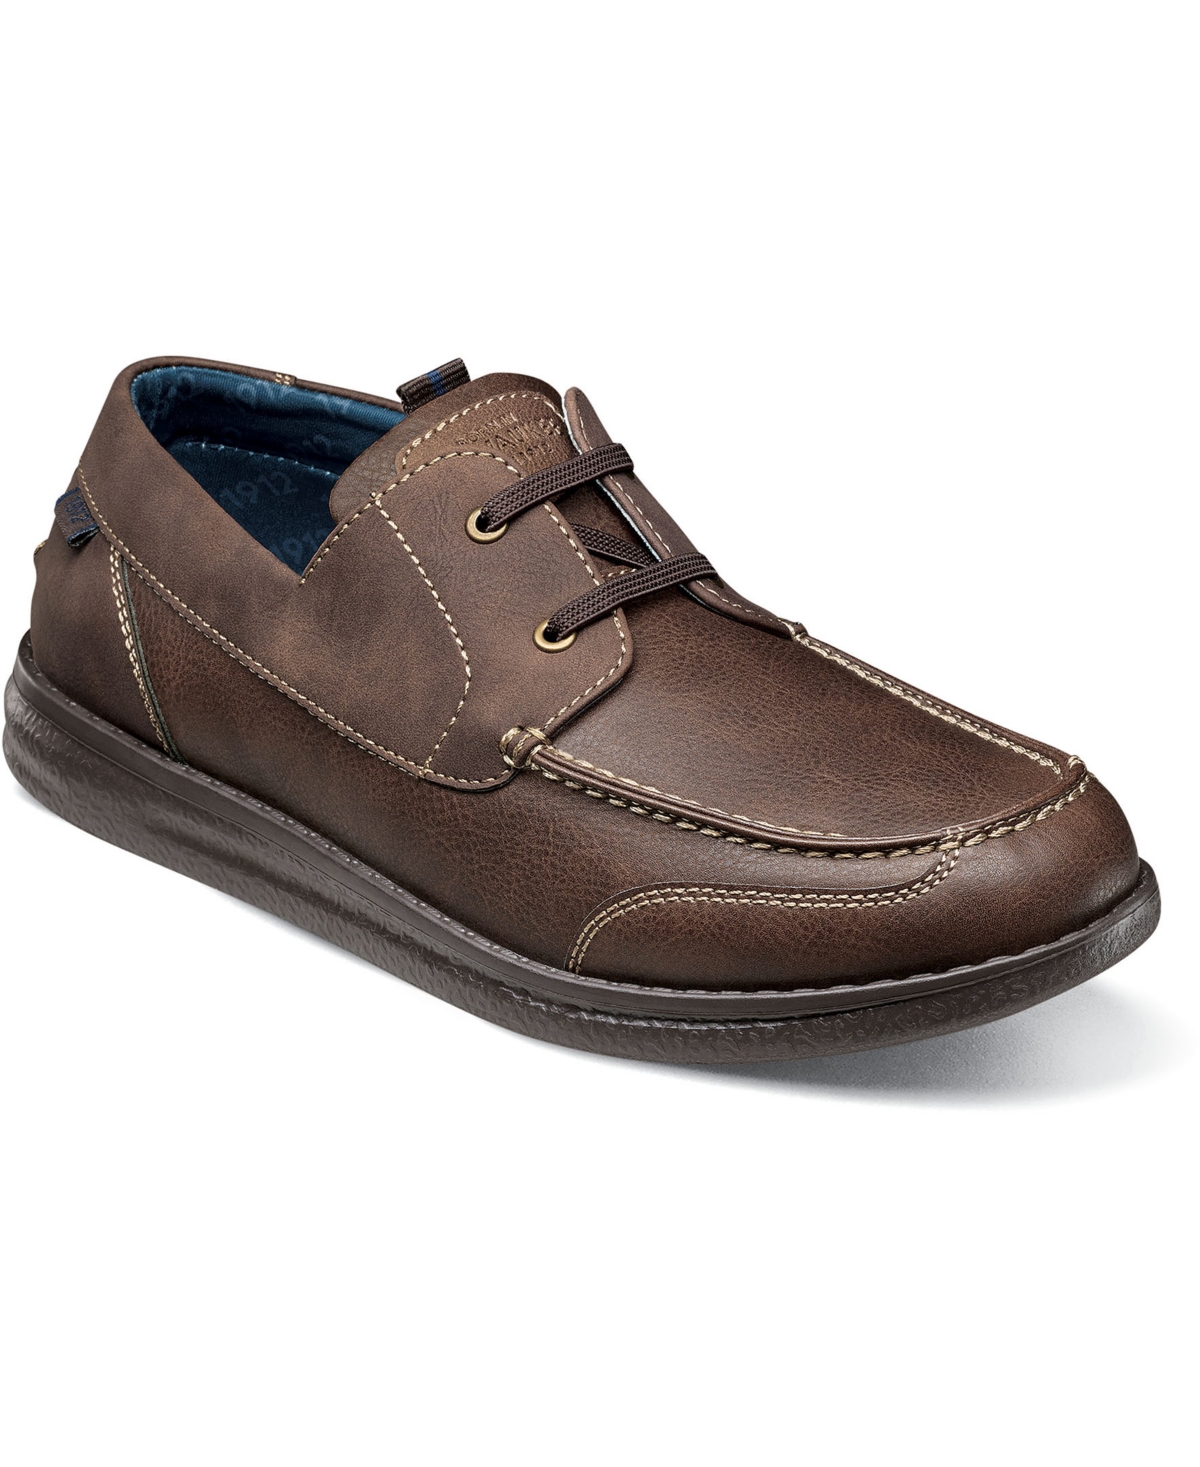 Men's Brewski Moc Toe Boat Shoes - Brown